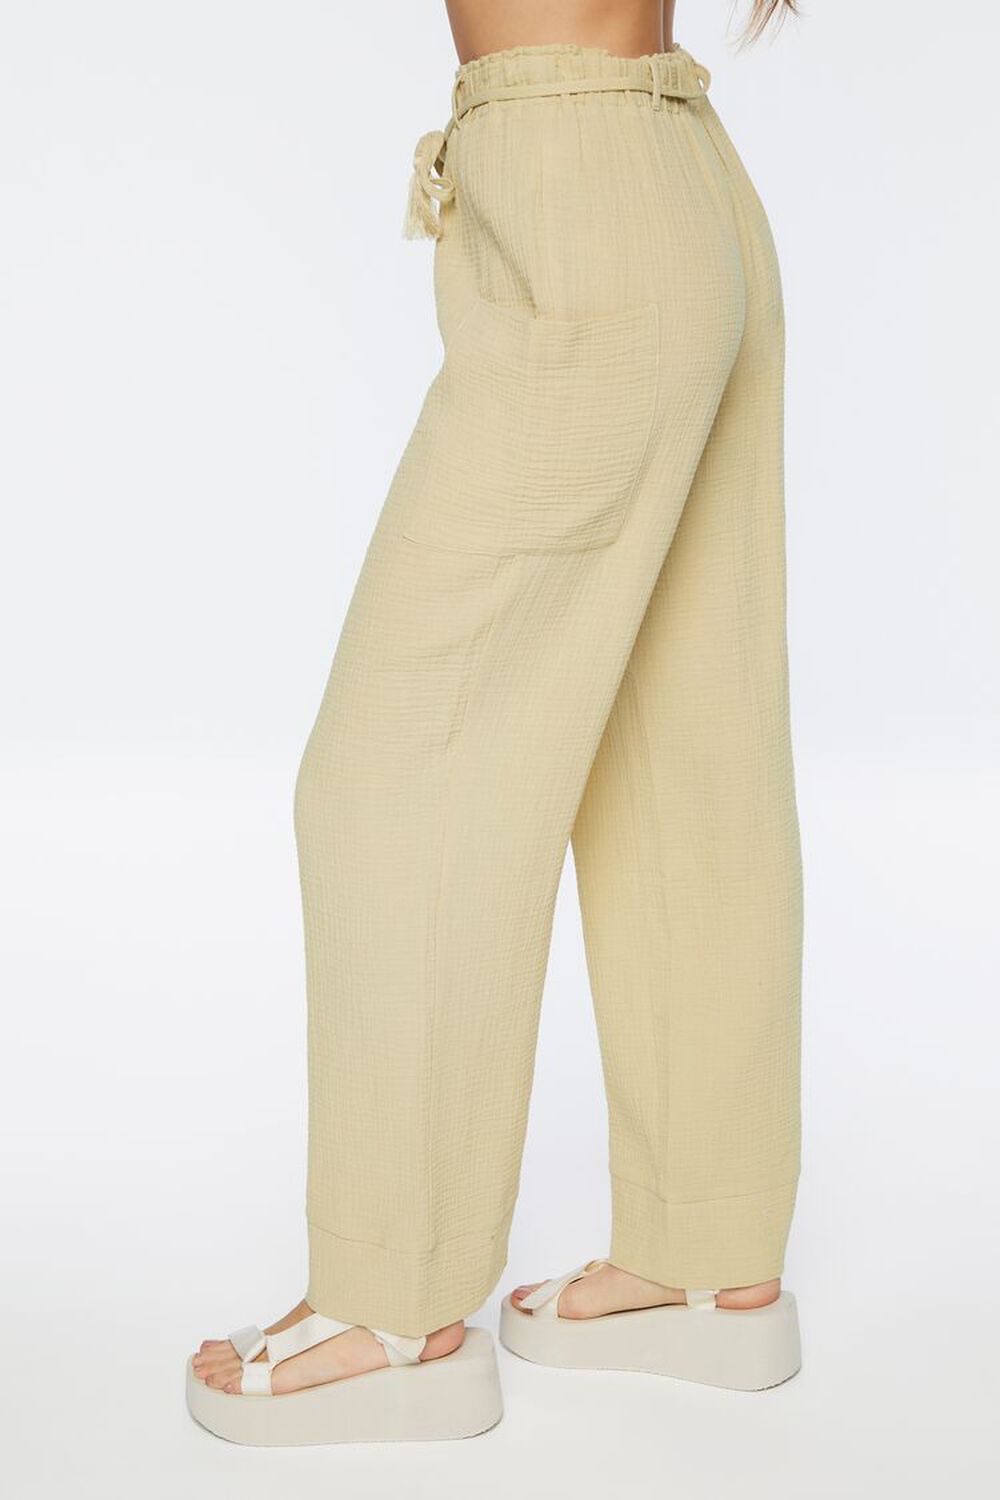 NATURAL Tassel Drawstring Pants, image 3